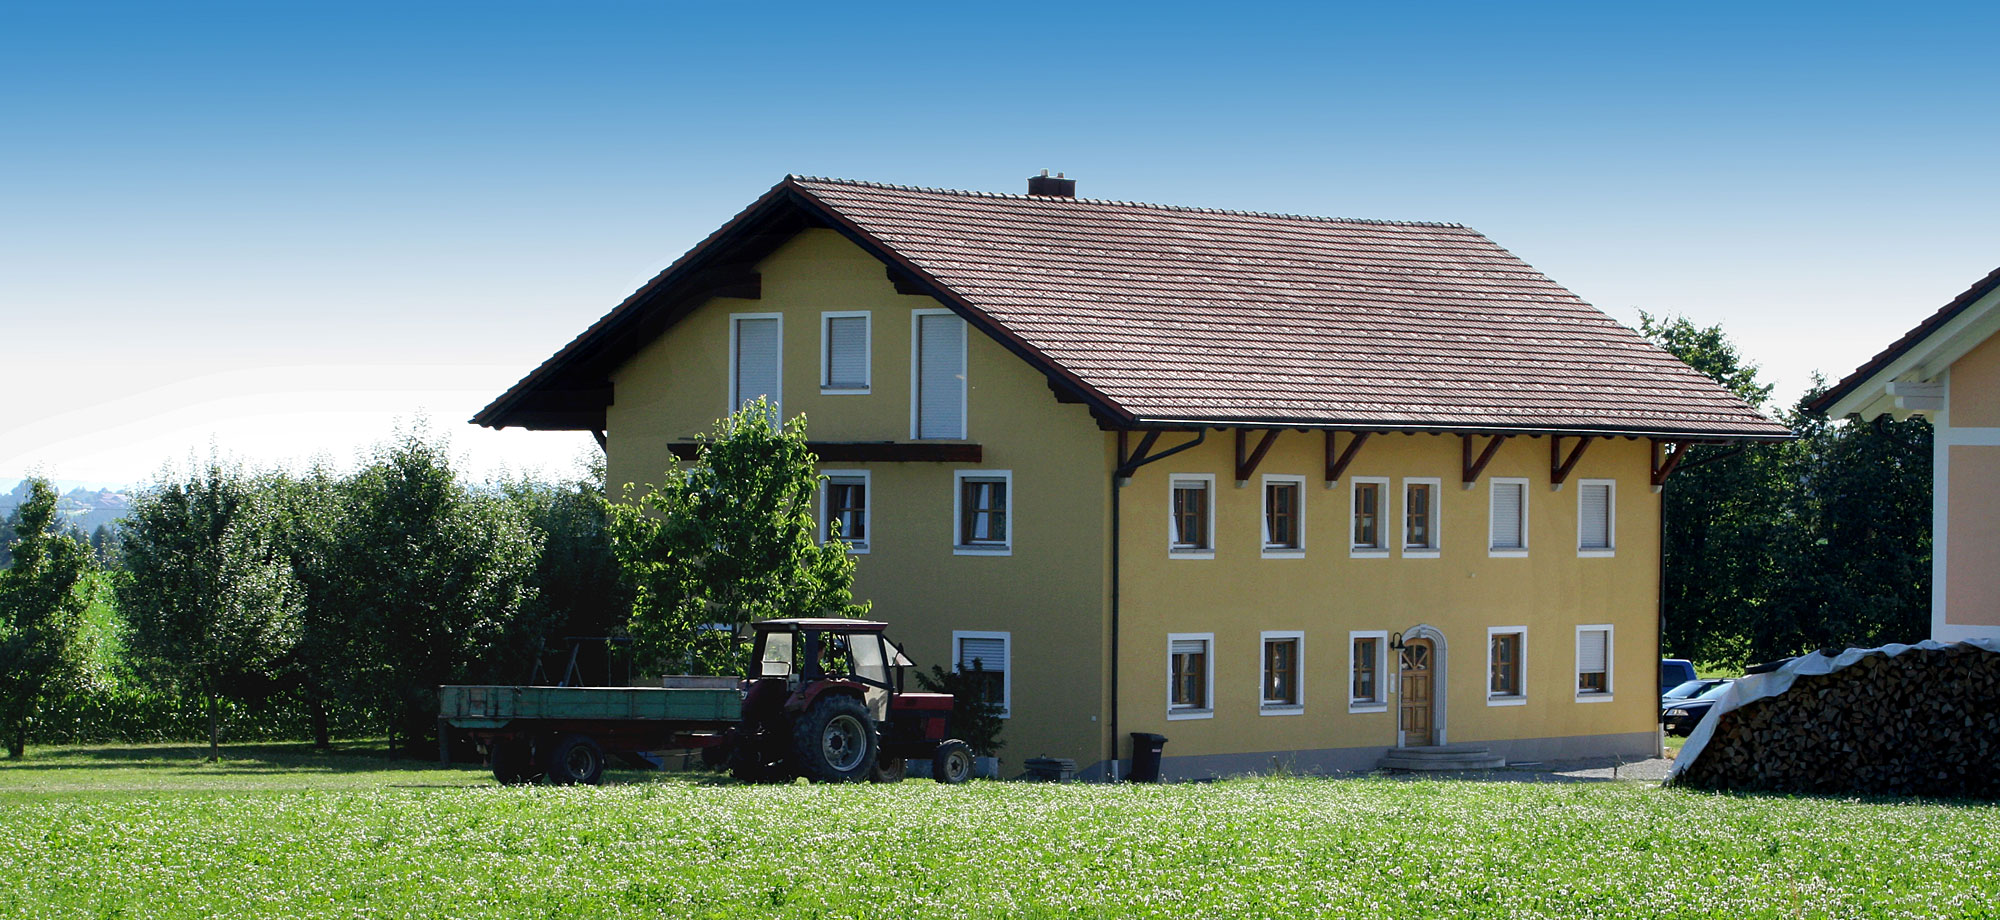 Ferienhof in Bayern